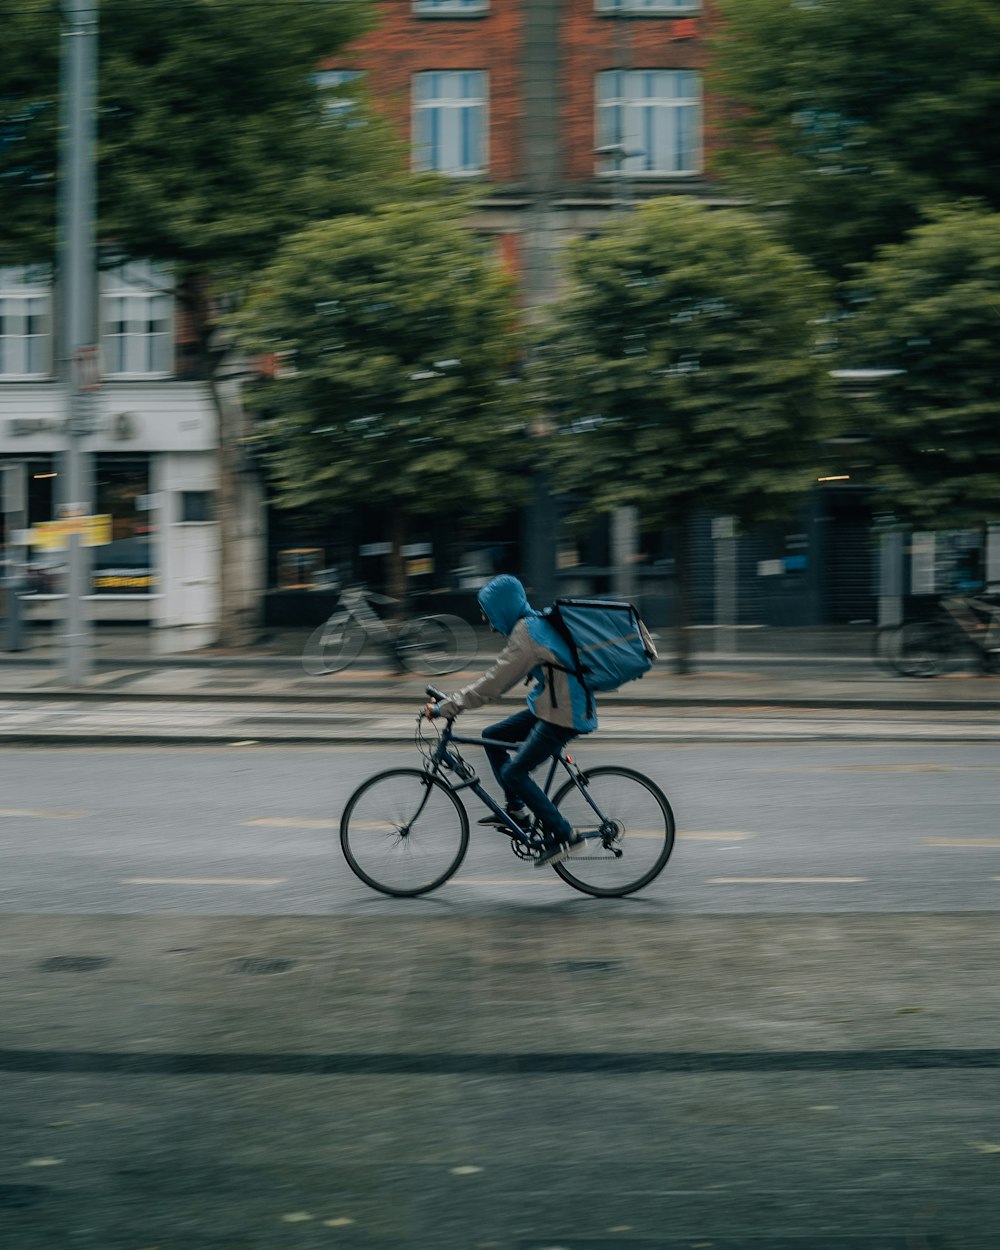 Mann im blauen Hemd fährt tagsüber Fahrrad auf der Straße